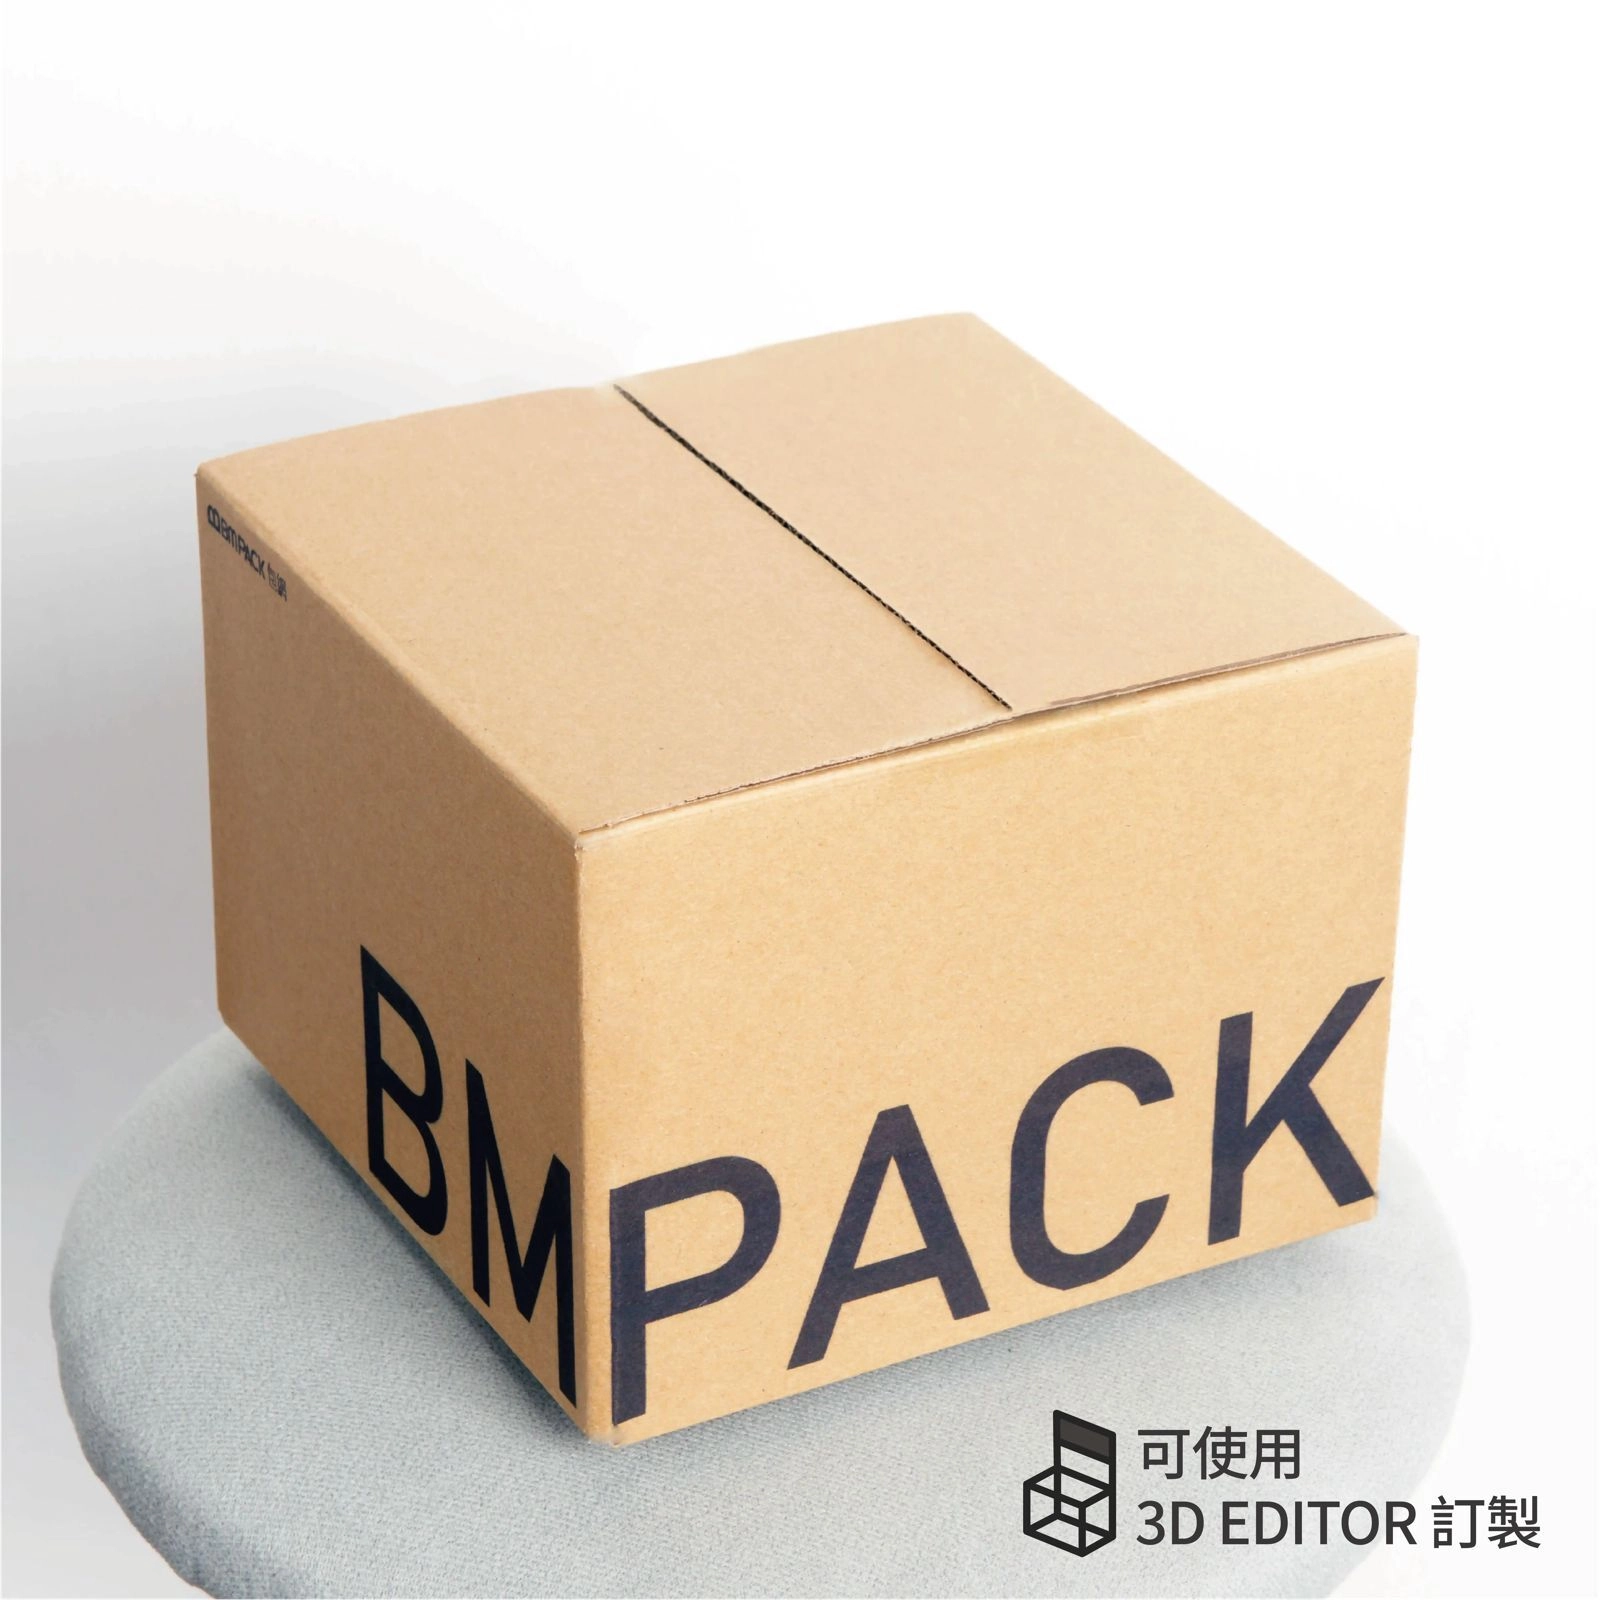 BM PACK 包網提供訂紙箱服務, 我們提供不同大小和尺寸的紙箱訂製